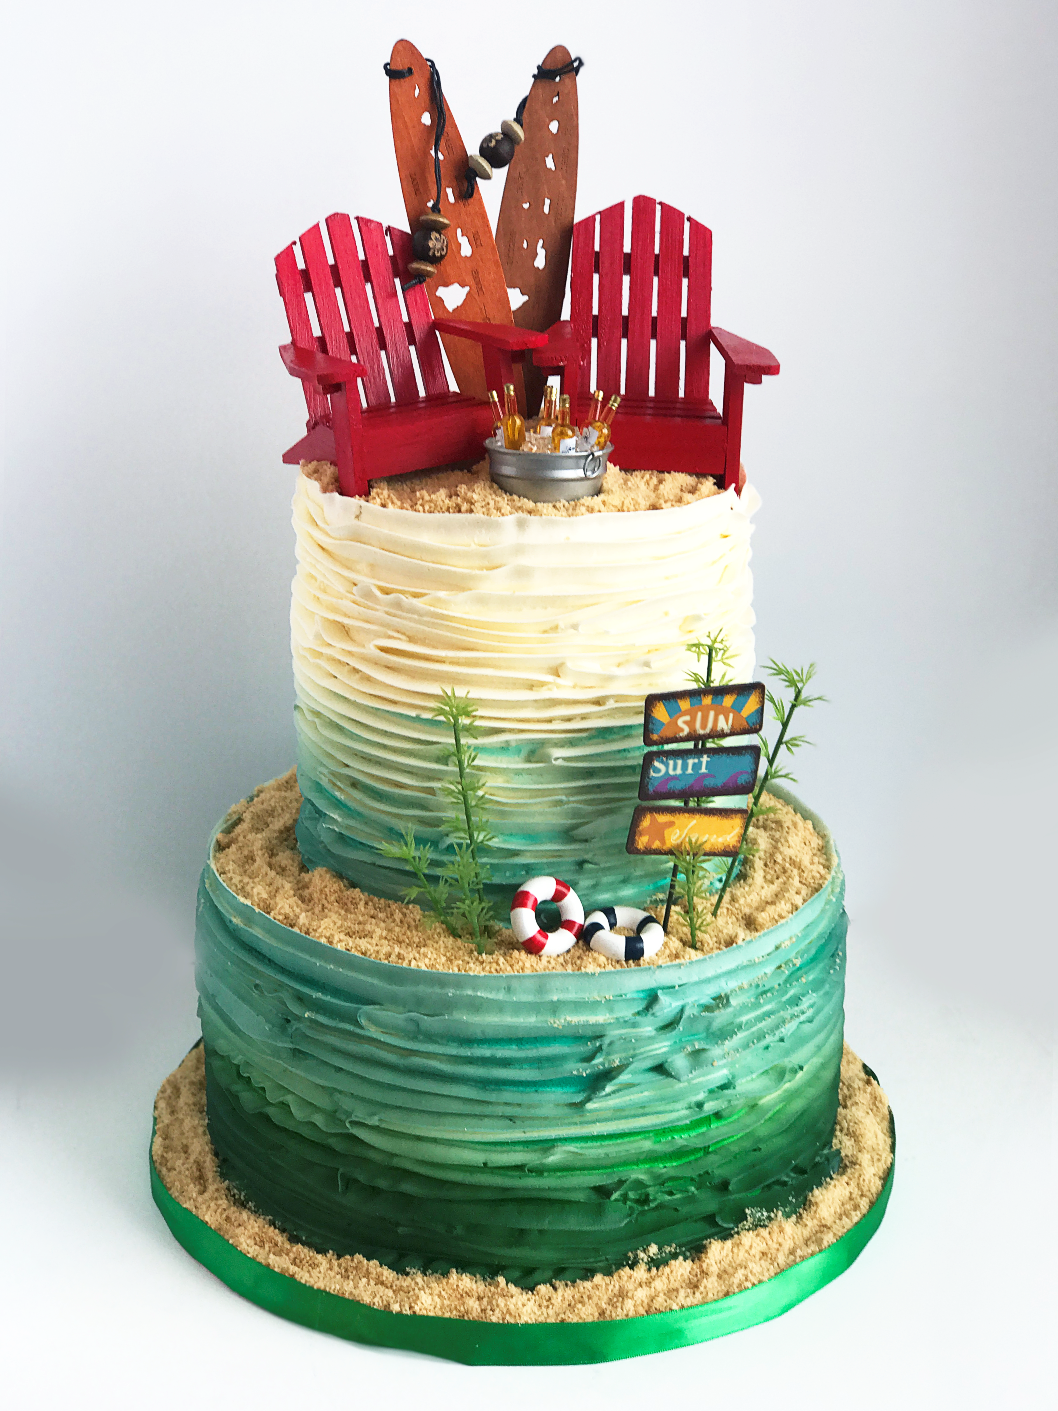 Whippt Beach inspired cake design 2017